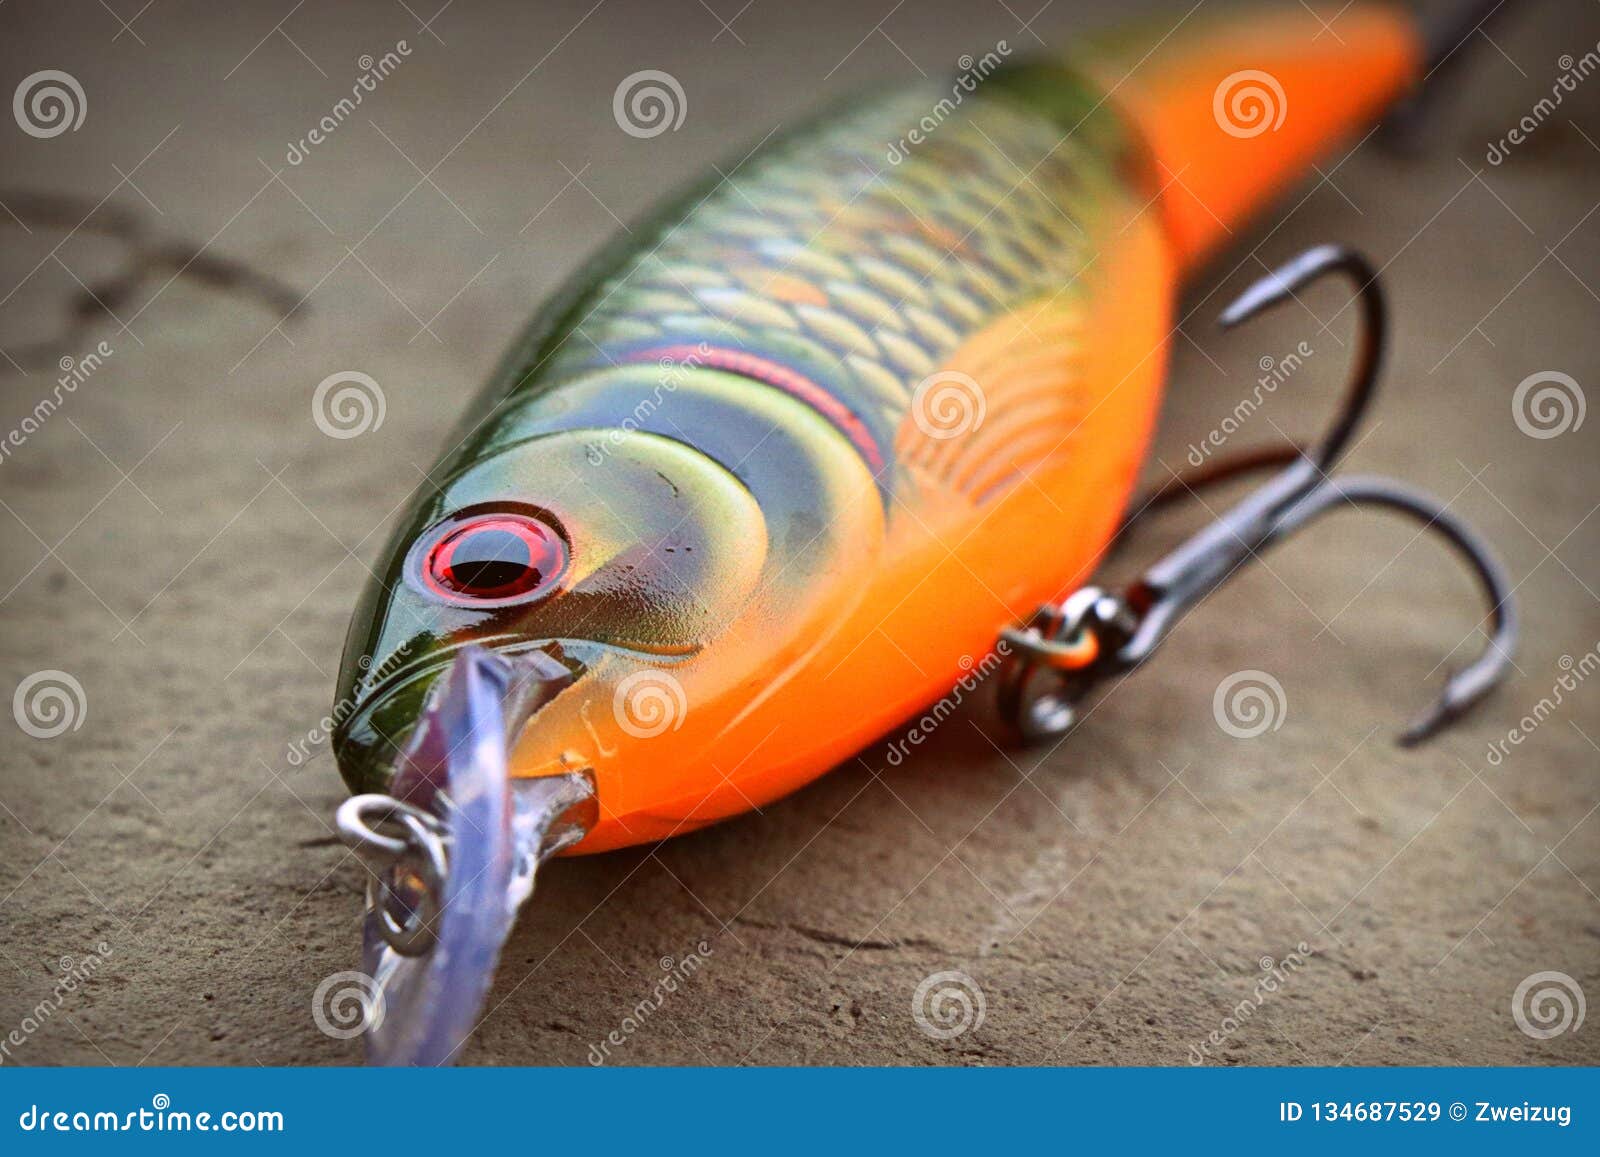 Rapala X Rap Jointed Pike Fishing Lure Plug Stock Image - Image of